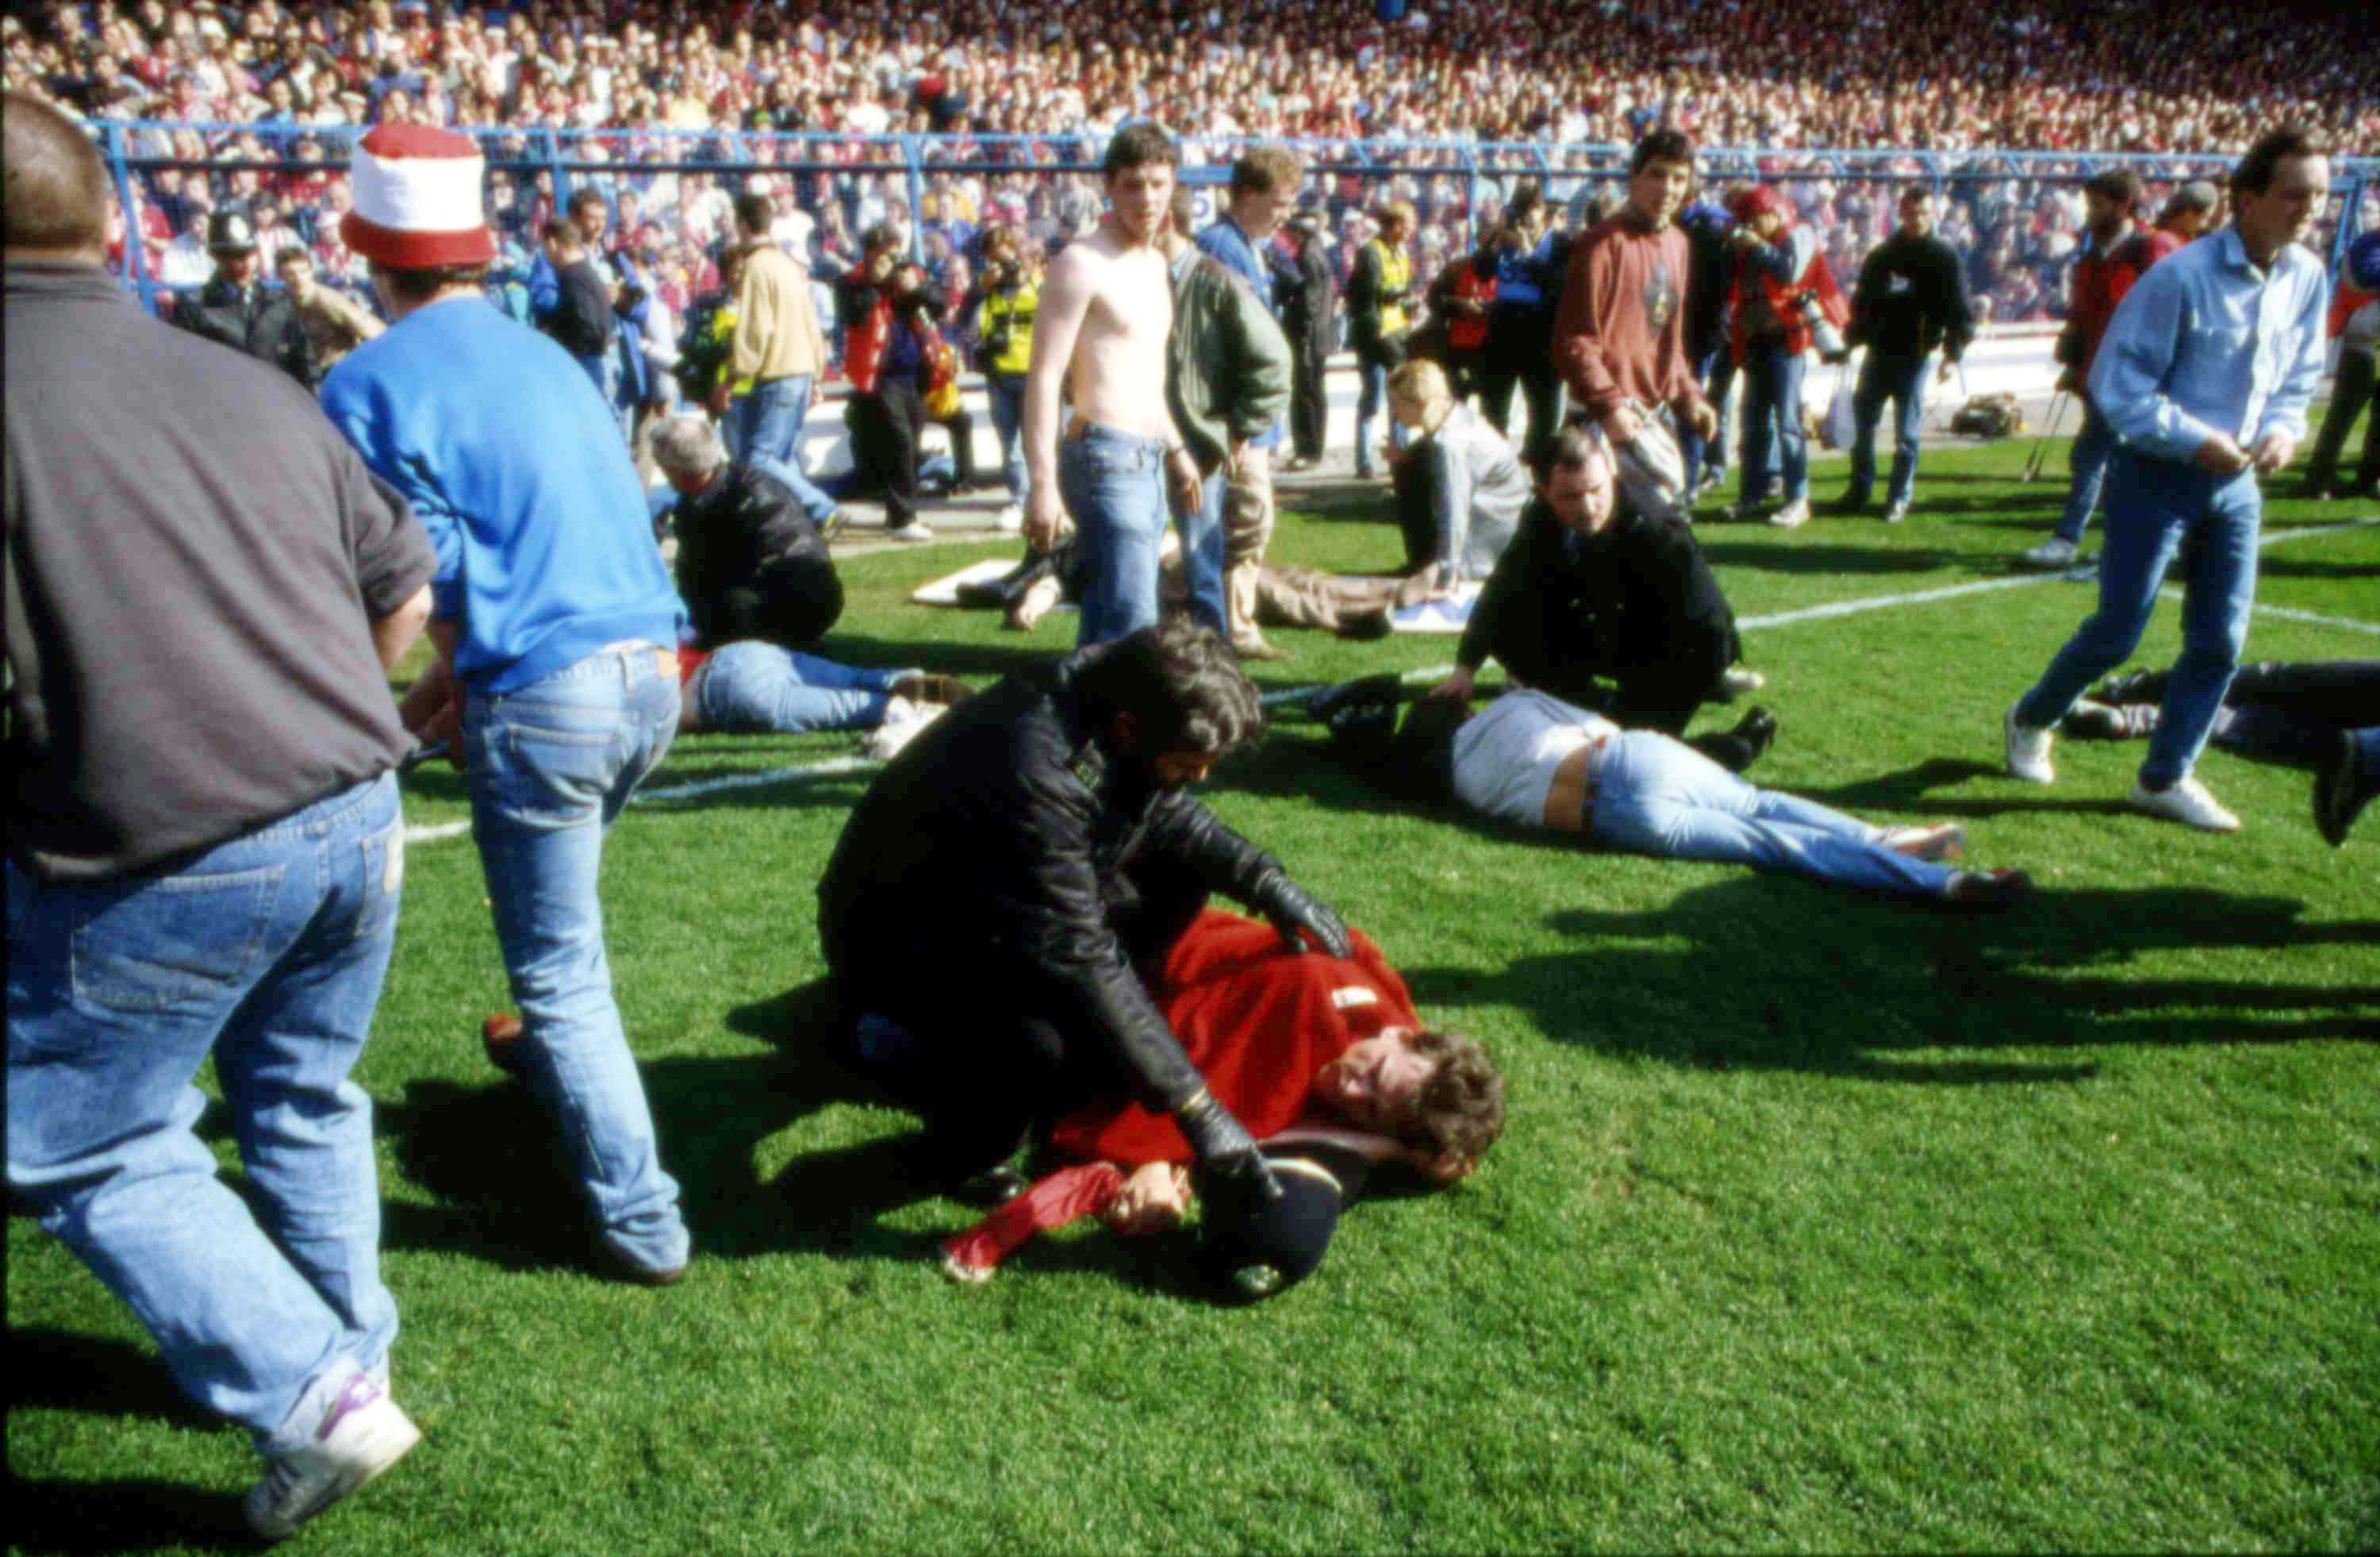 De horribla scenerna från 15 april 1989. Dagen som förevigt kommer leva i Liverpoolbornas minne.